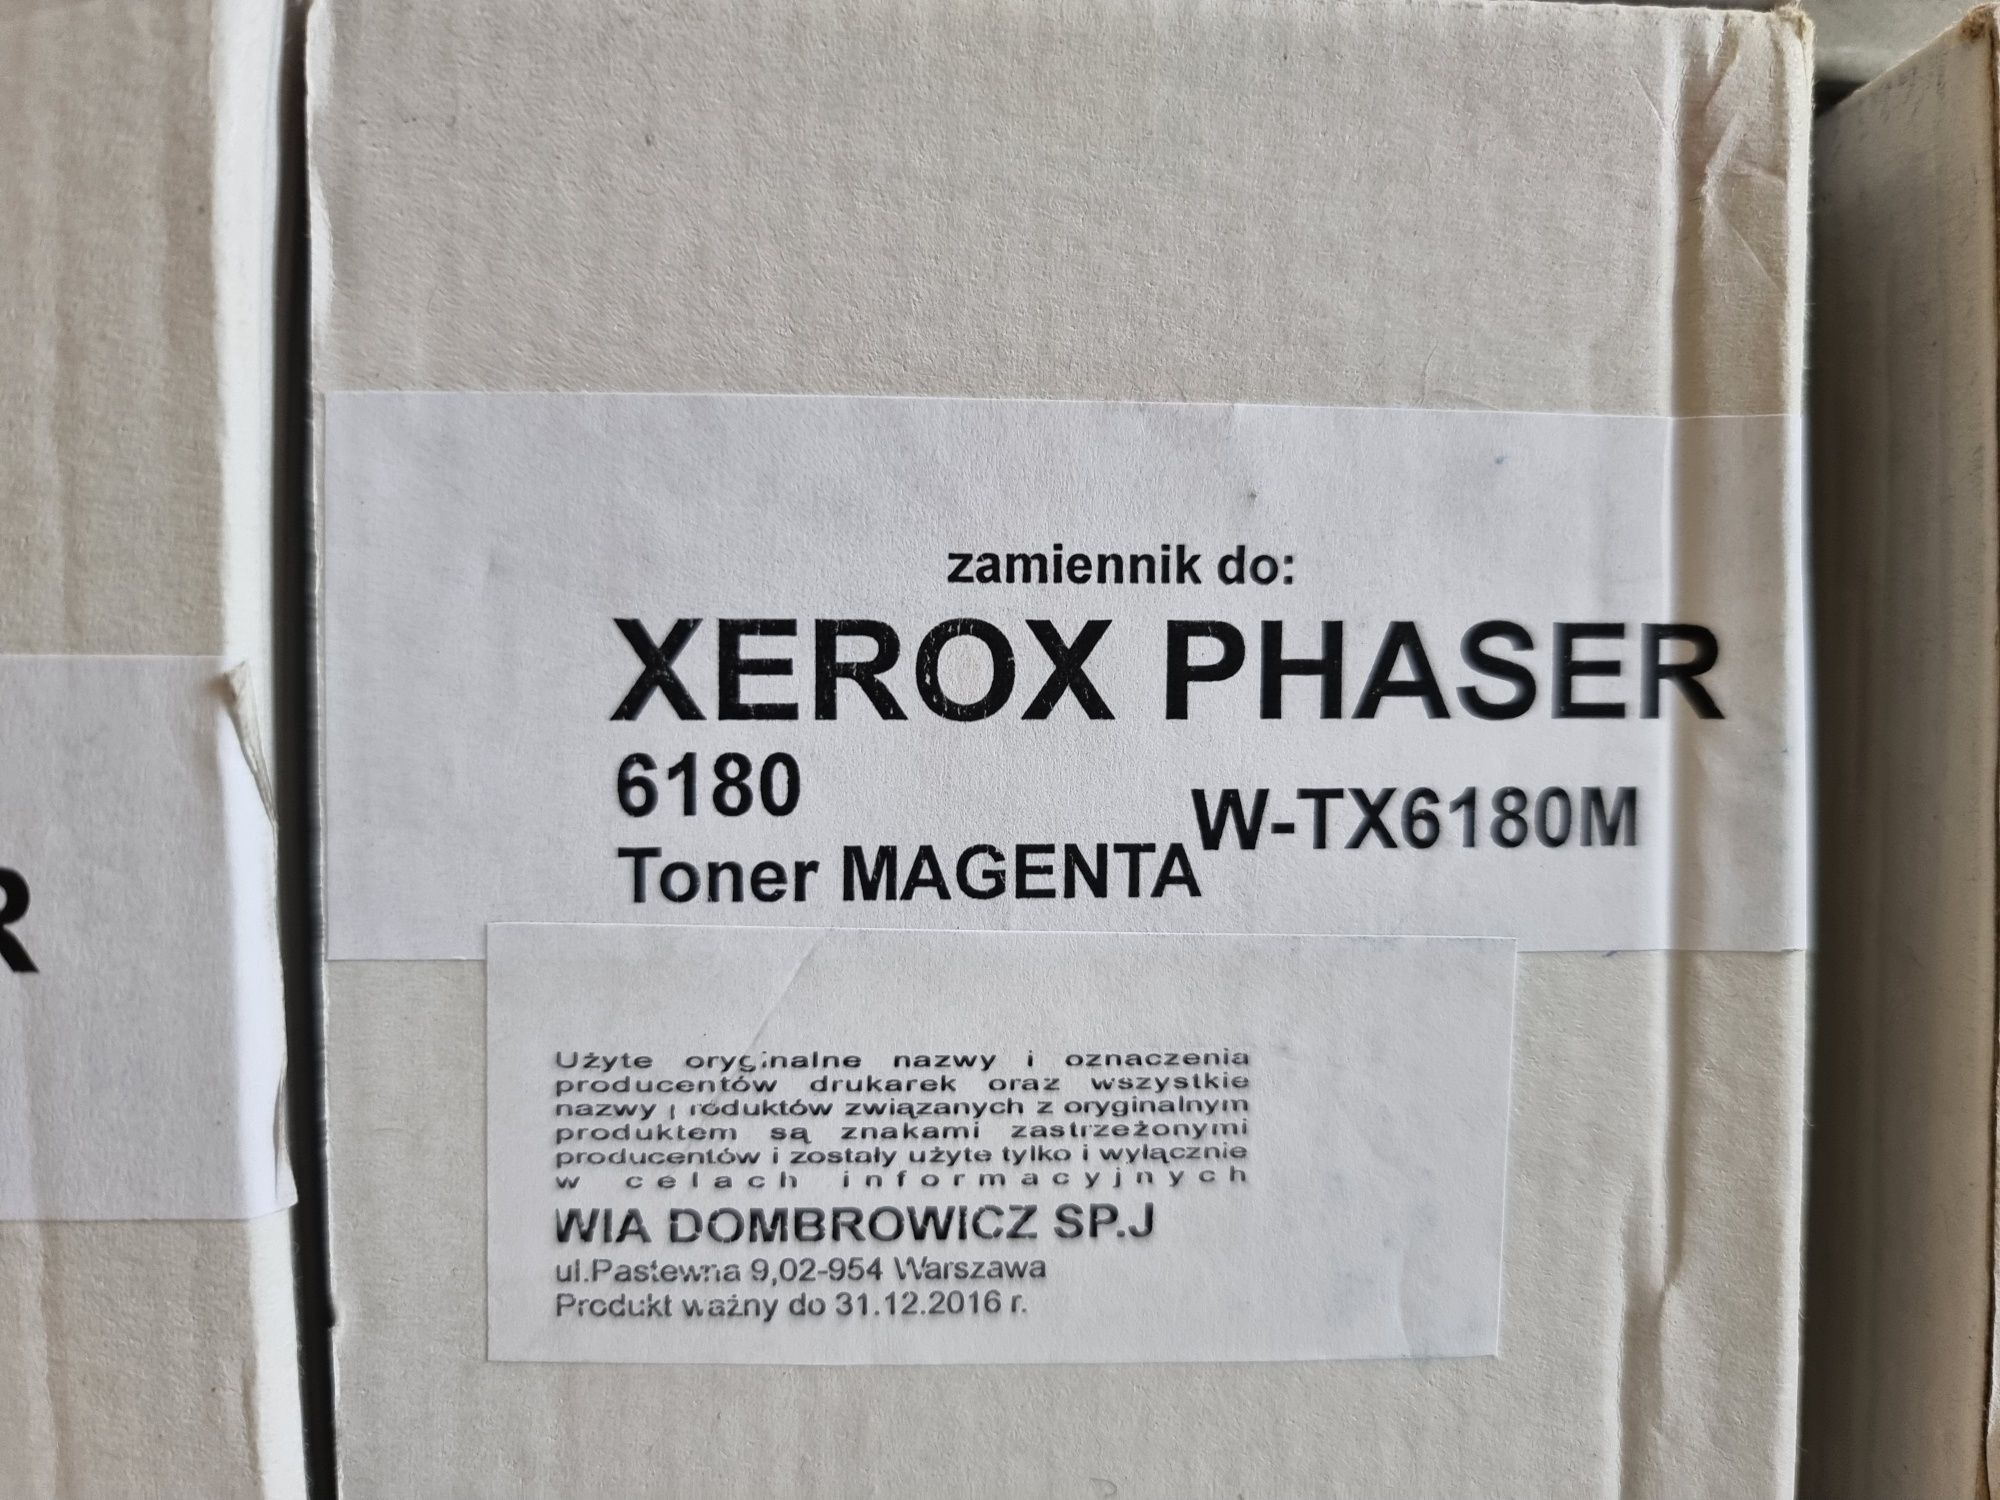 Xerox Phaser 6180 tonery